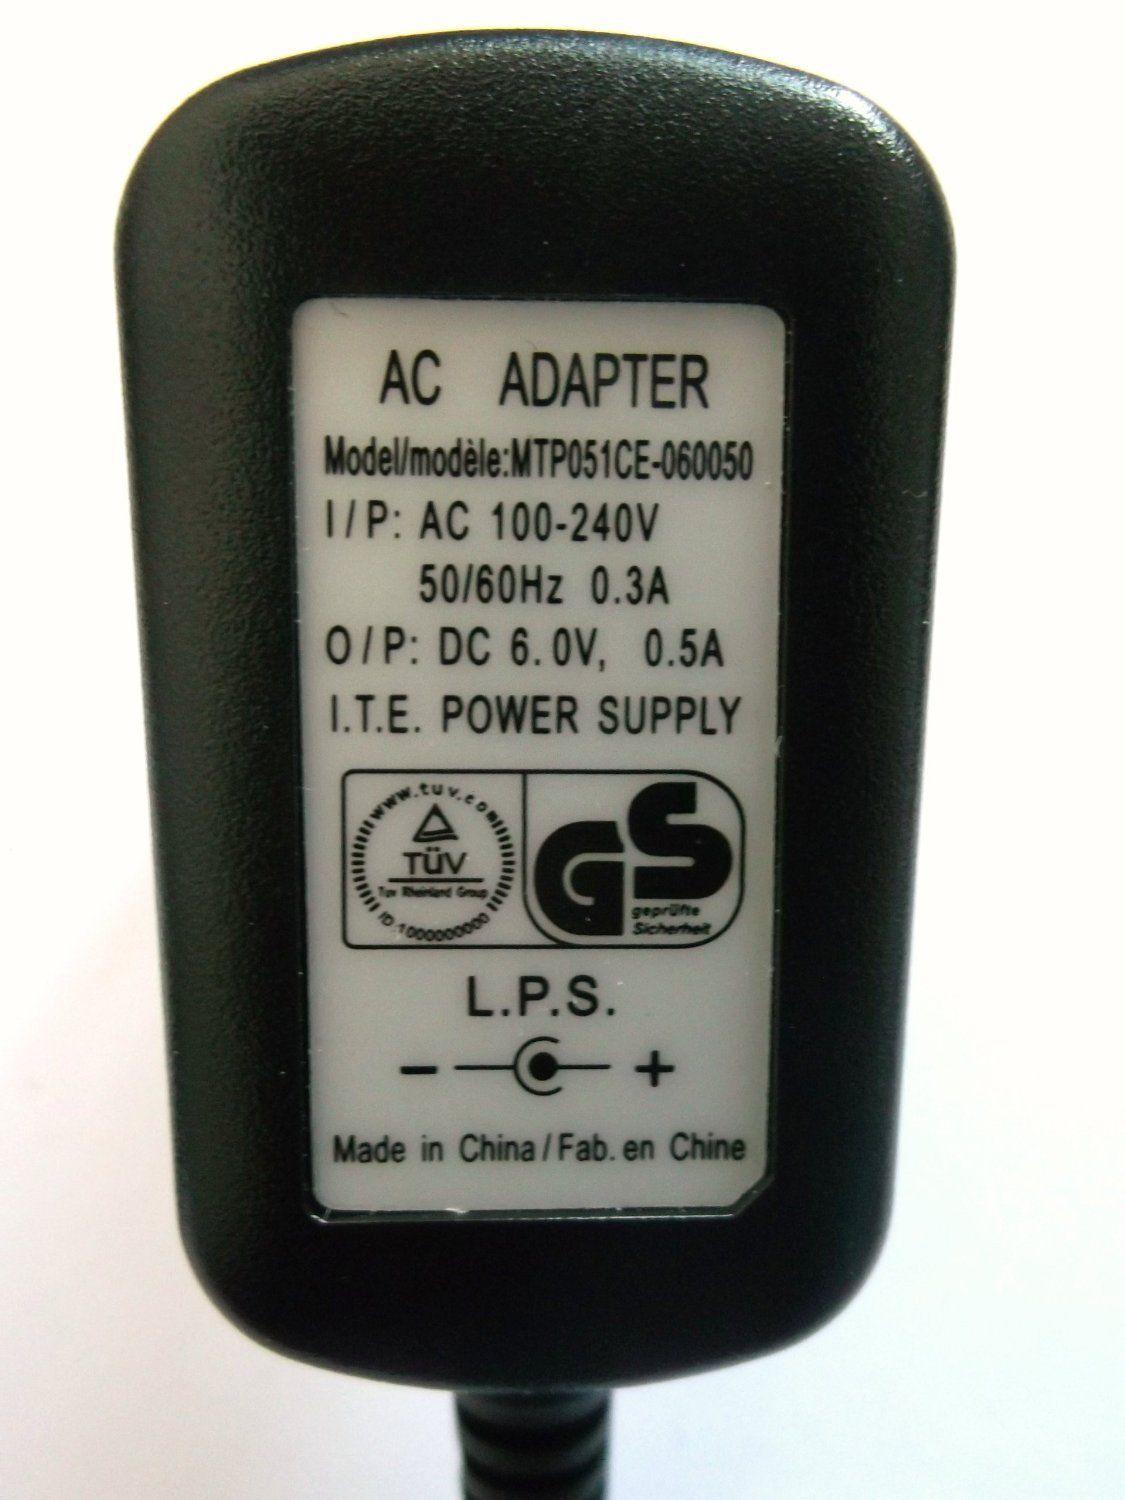 NEW Original 6V 0.5A MTP051CE-060050 Netzteil Ac Adapter Eu